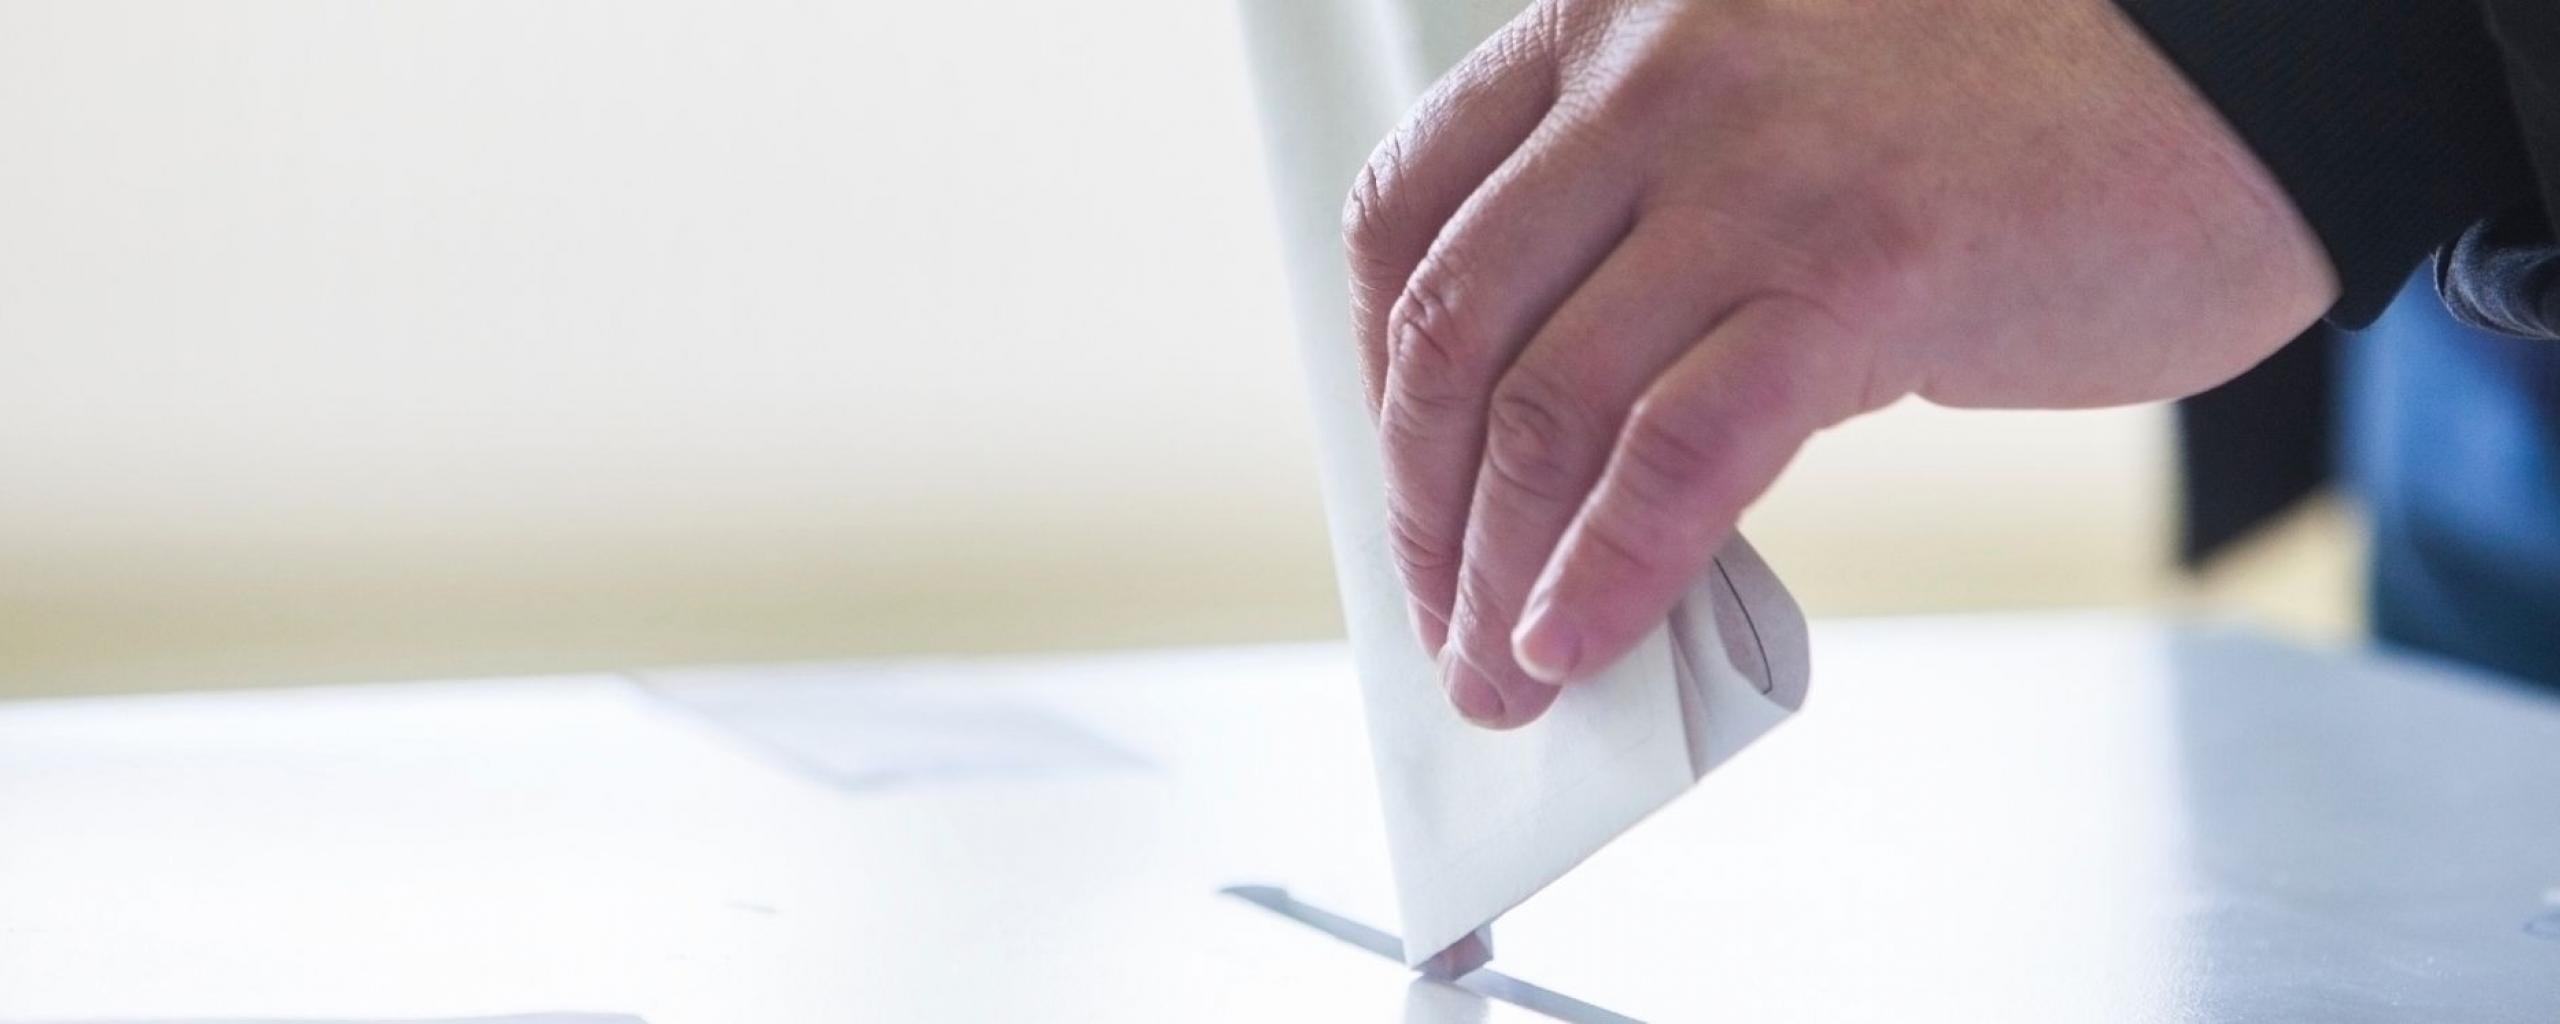 headerafbeelding gemeenteraadsverkiezingen 2022, fot van een hand die een stembiljet deponeert in een bak